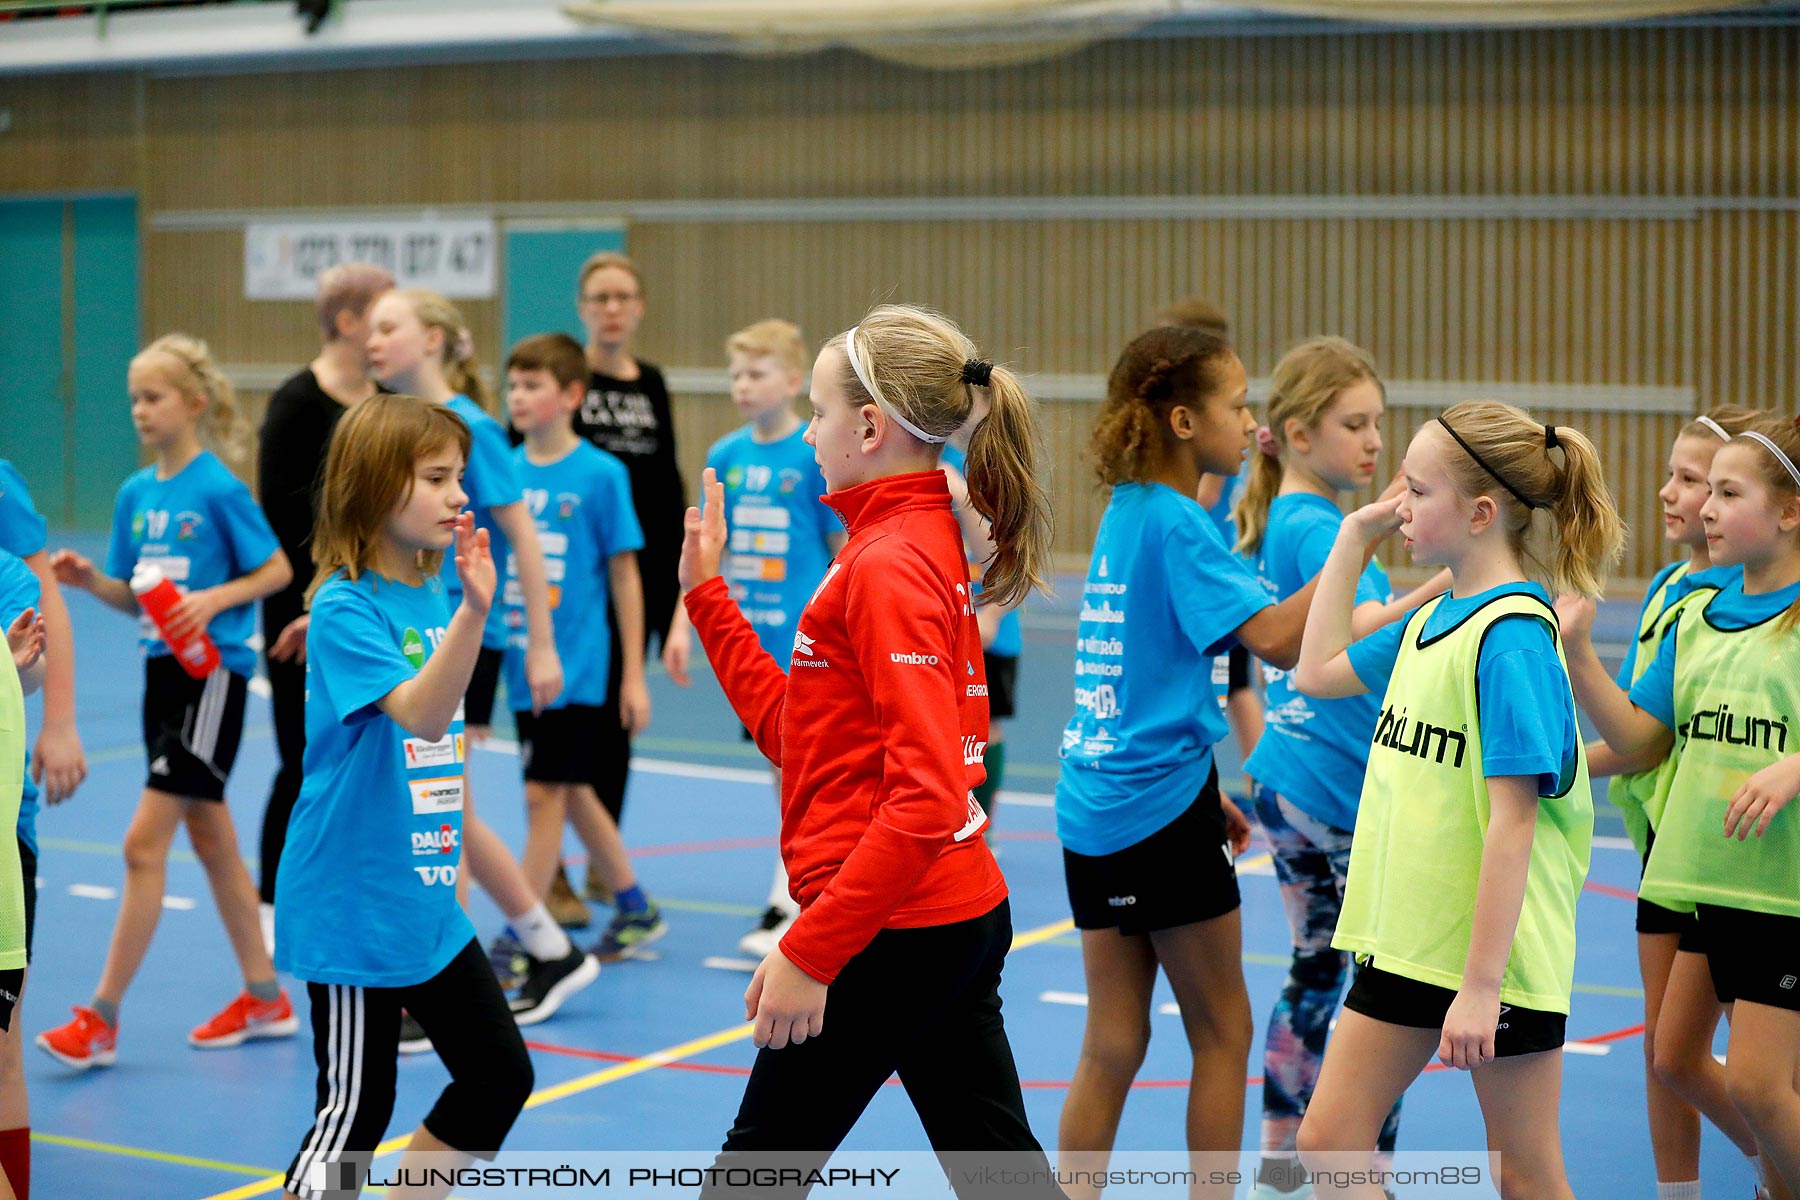 Klasshandboll Skövde 2019 Åldersklass 2008,mix,Arena Skövde,Skövde,Sverige,Handboll,,2019,211840